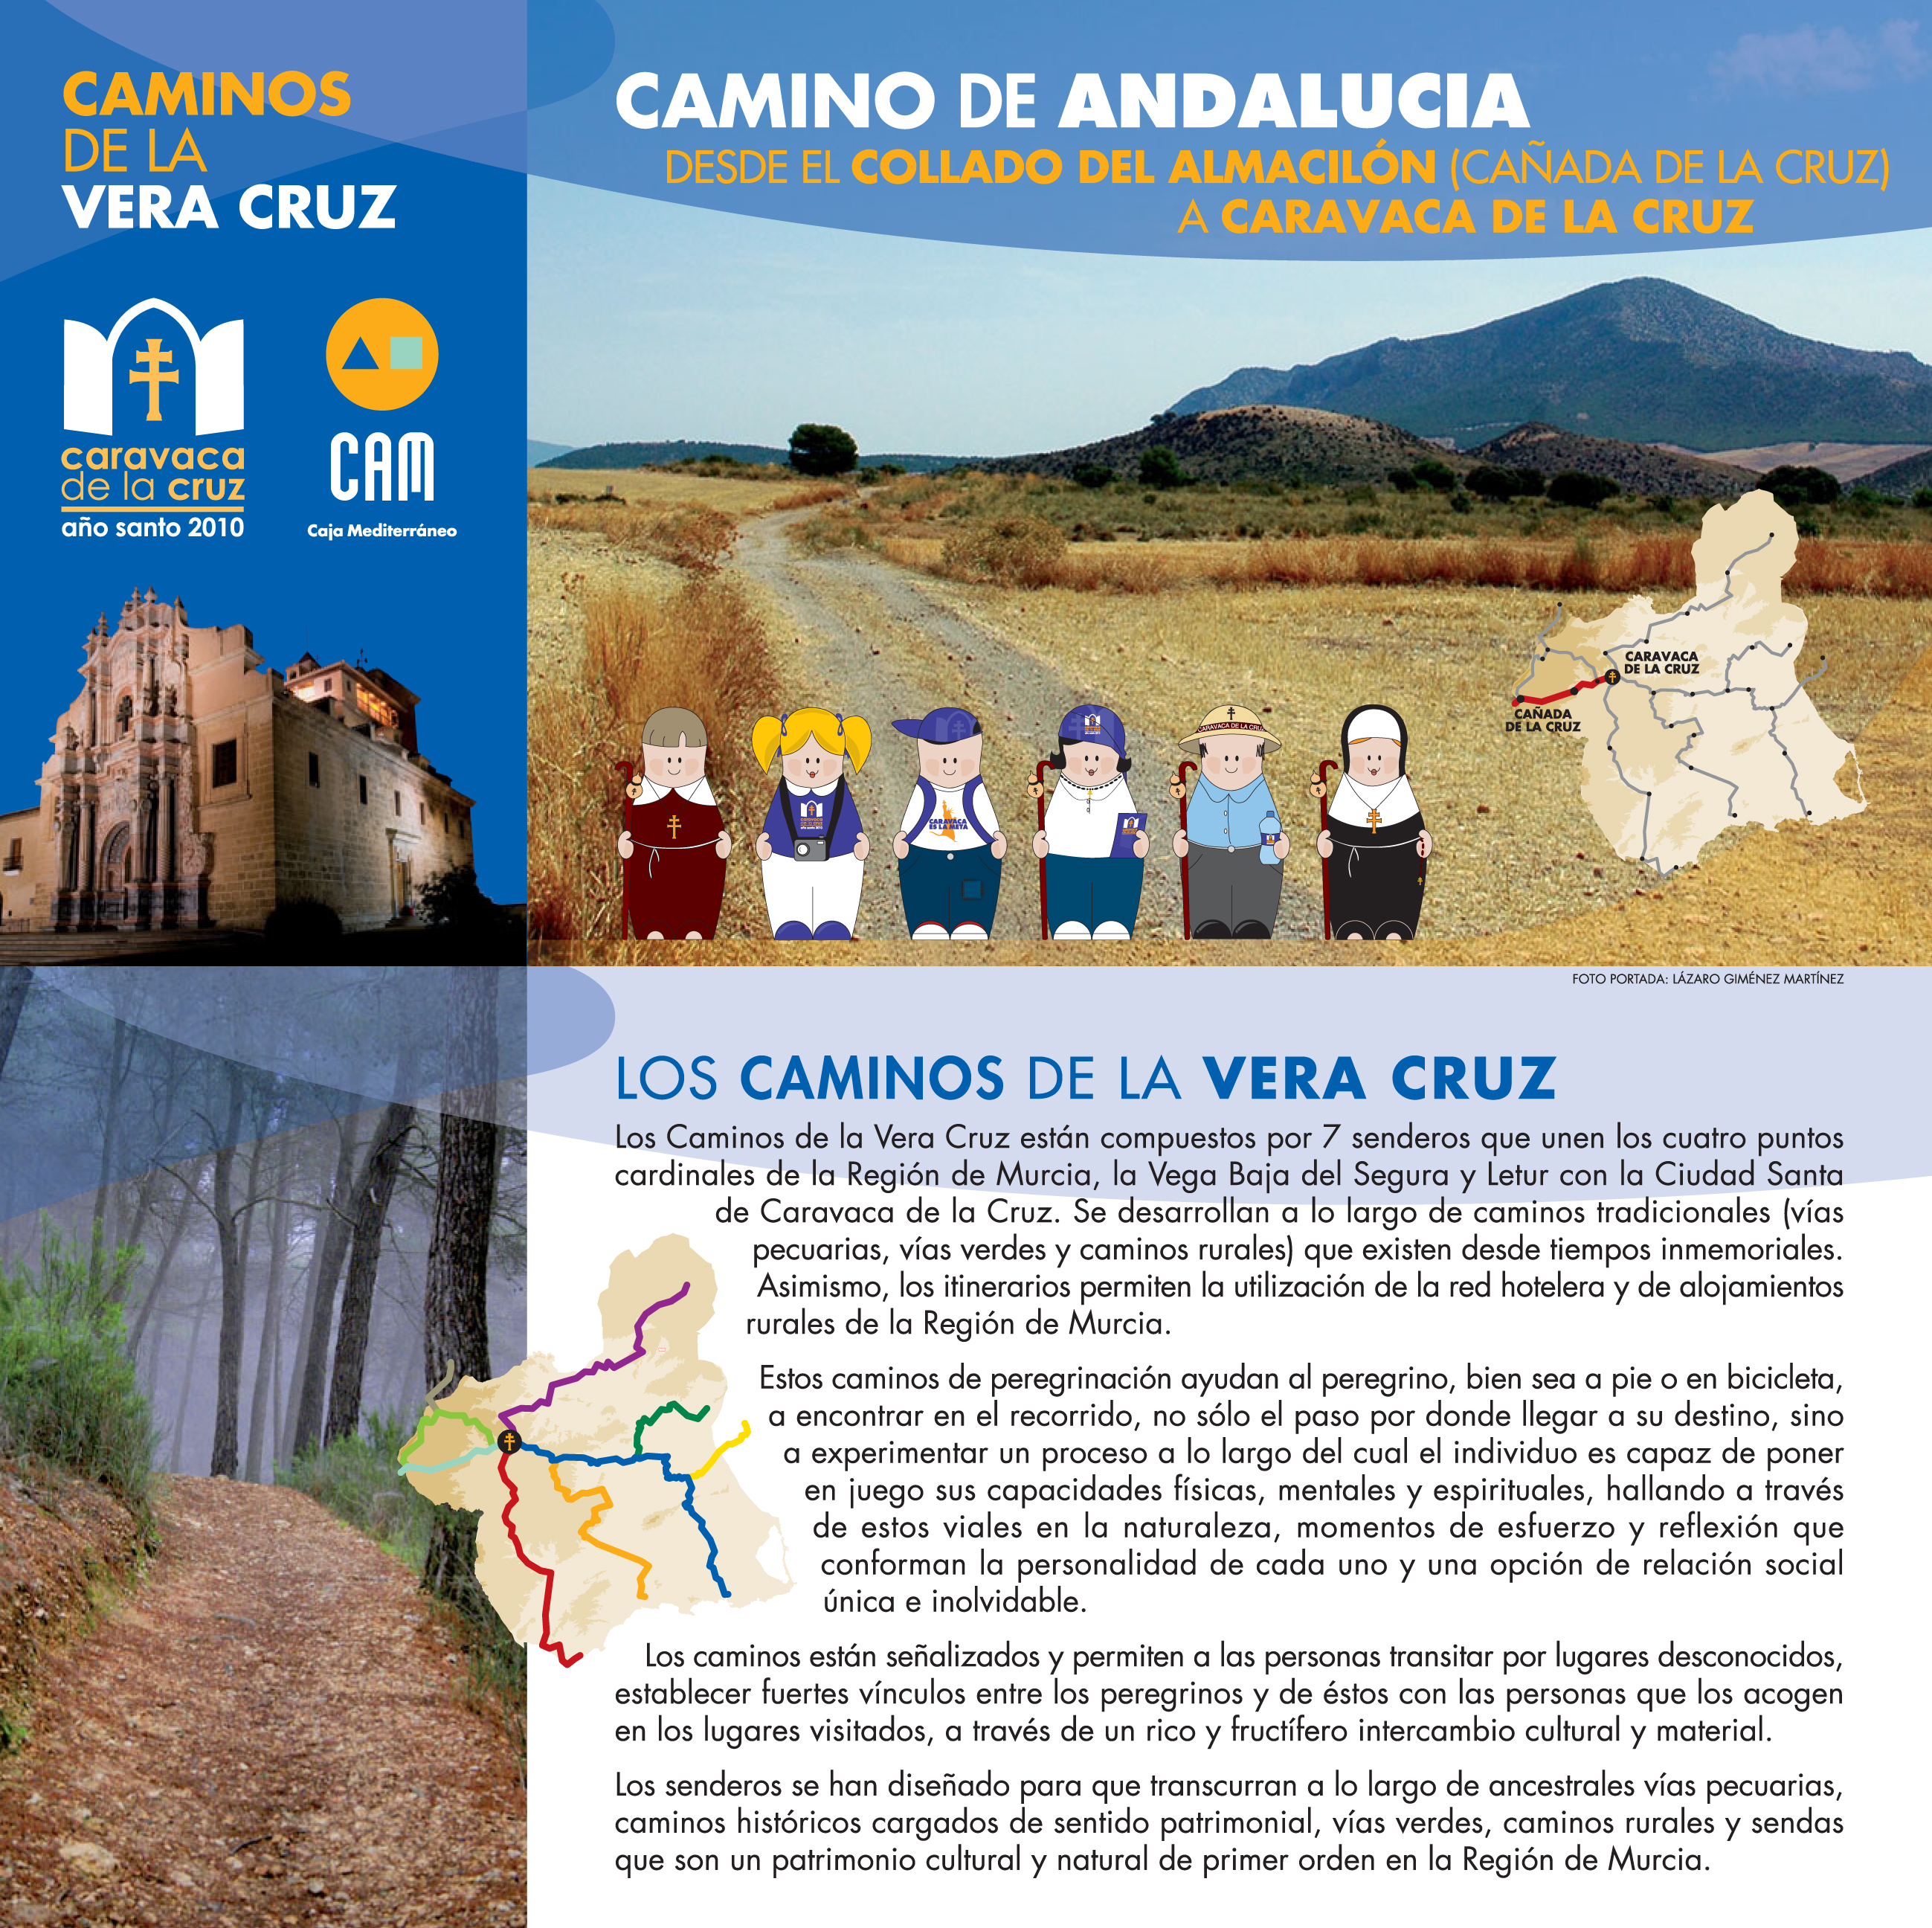 Extracto del folleto del Camino de Andalucía